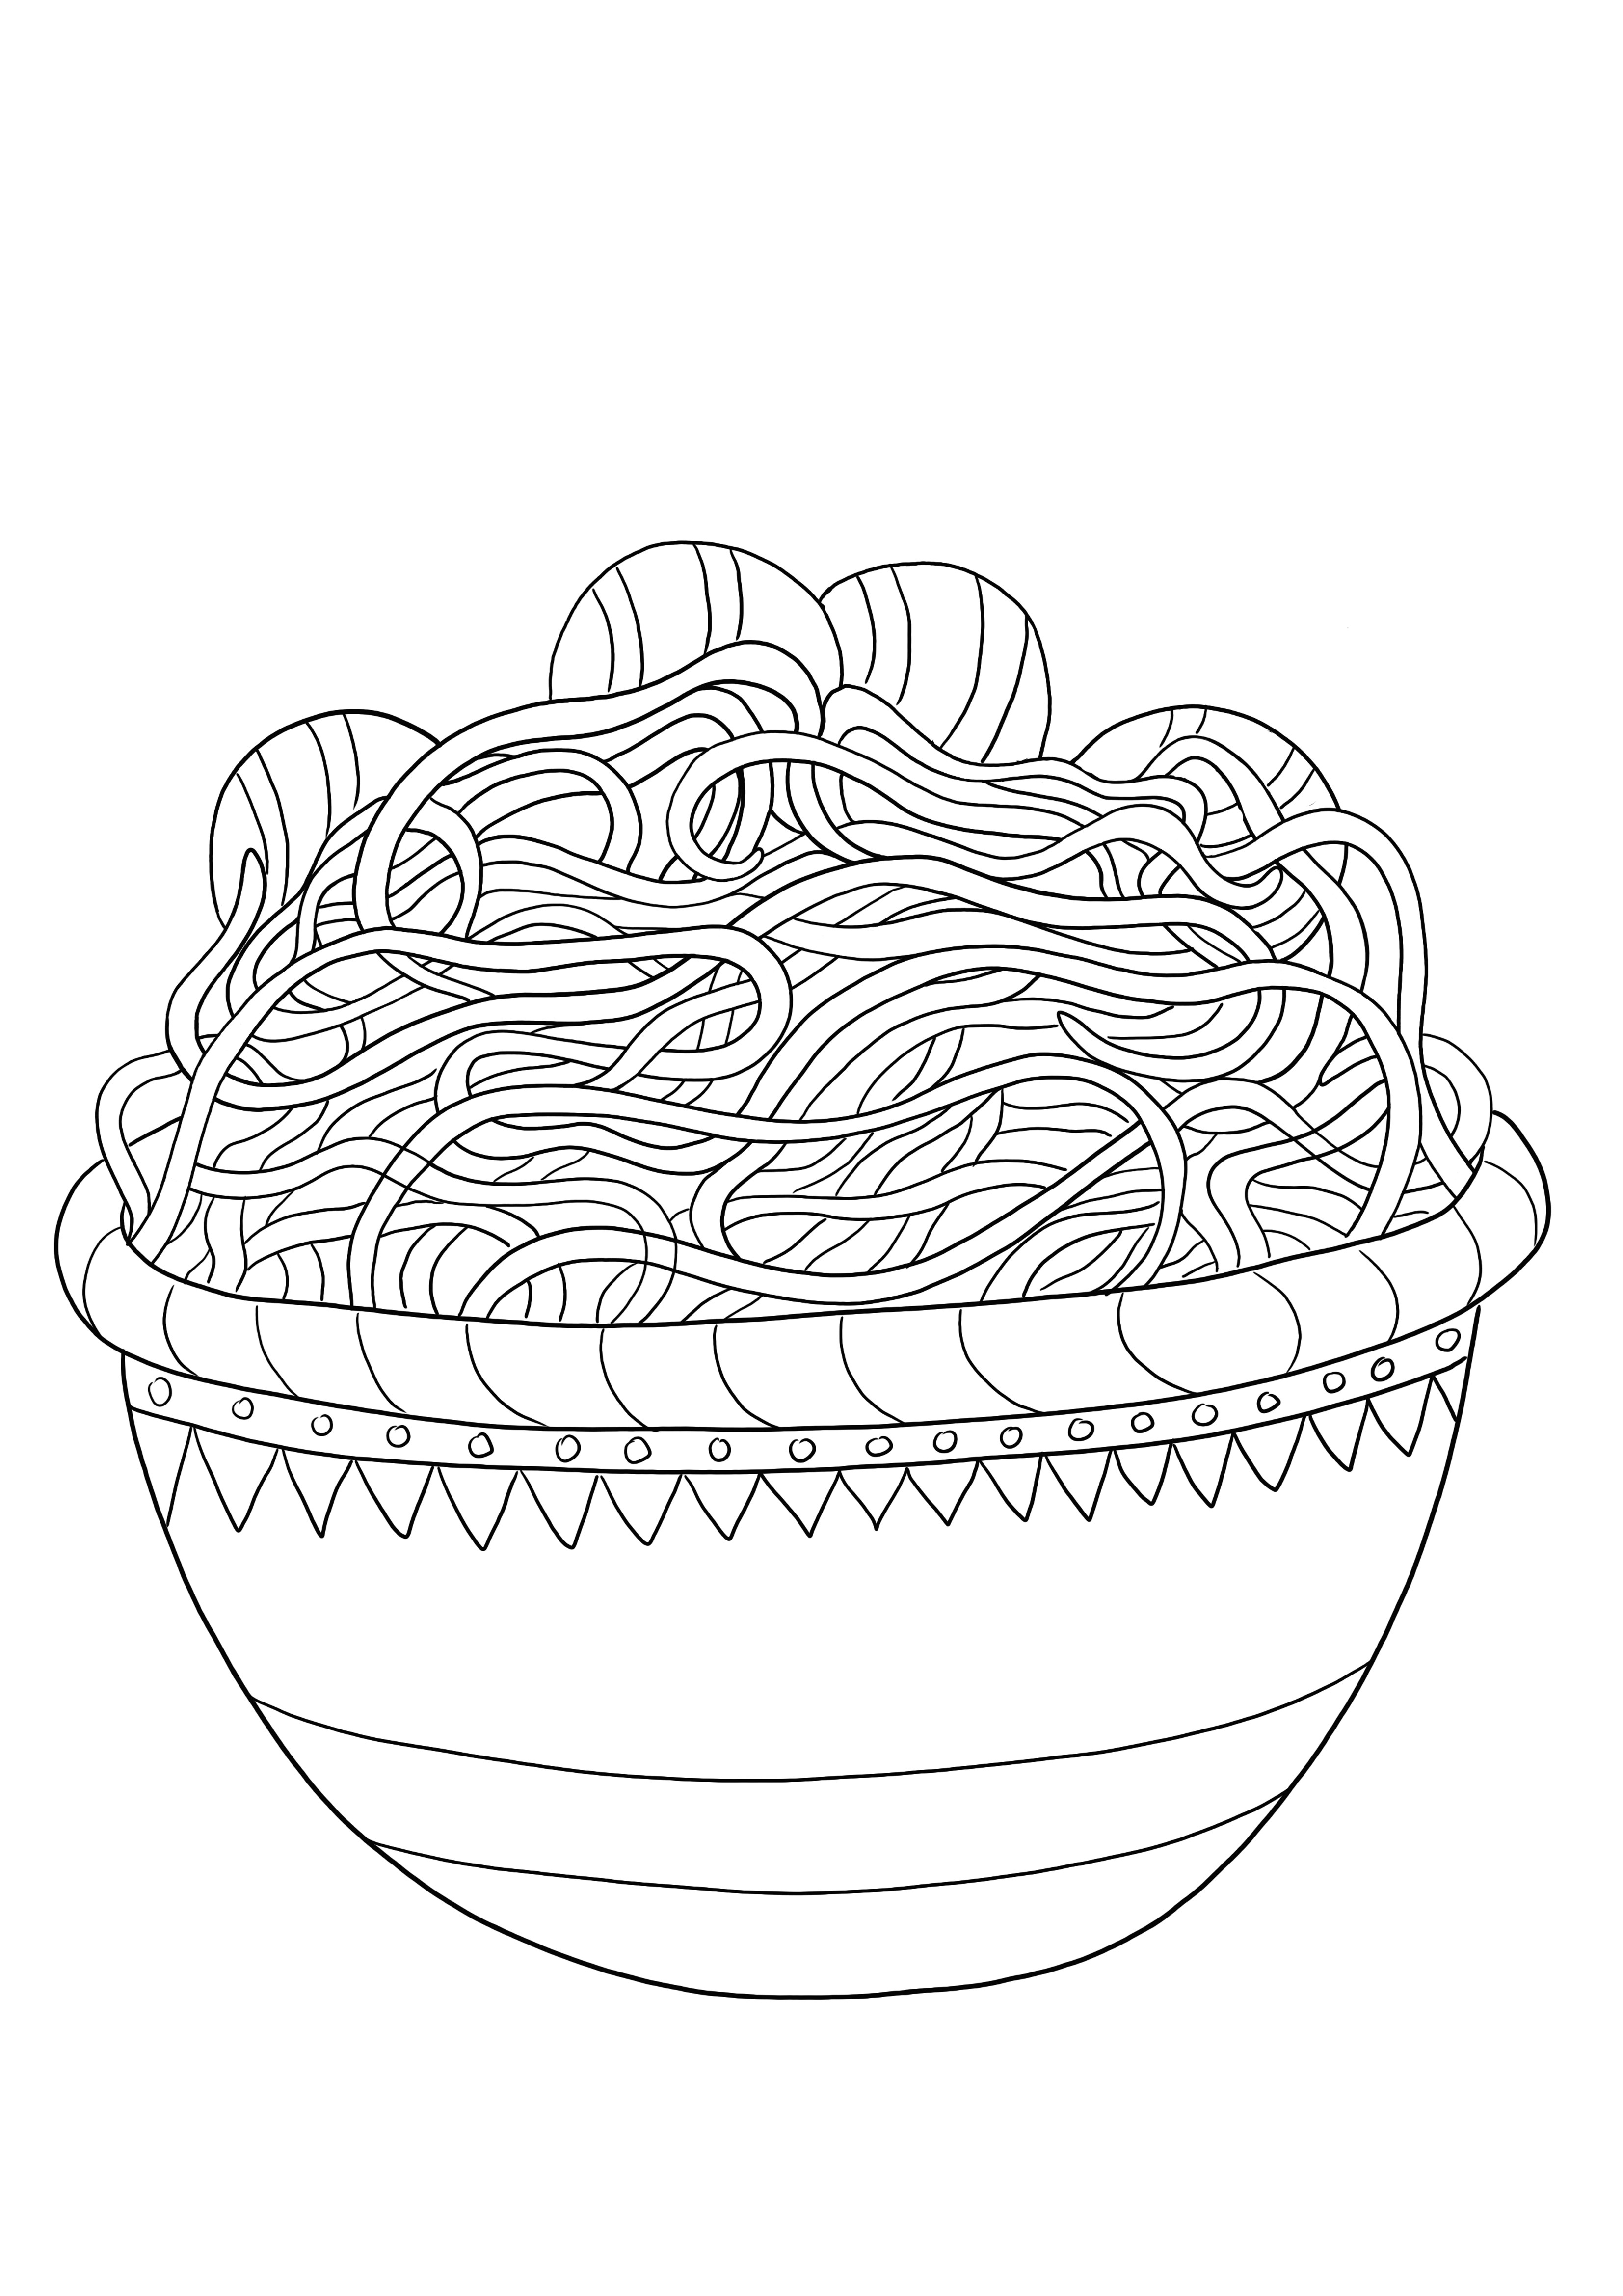 Imprimable gratuitement pour colorier facilement un bol de spaghettis pour les enfants